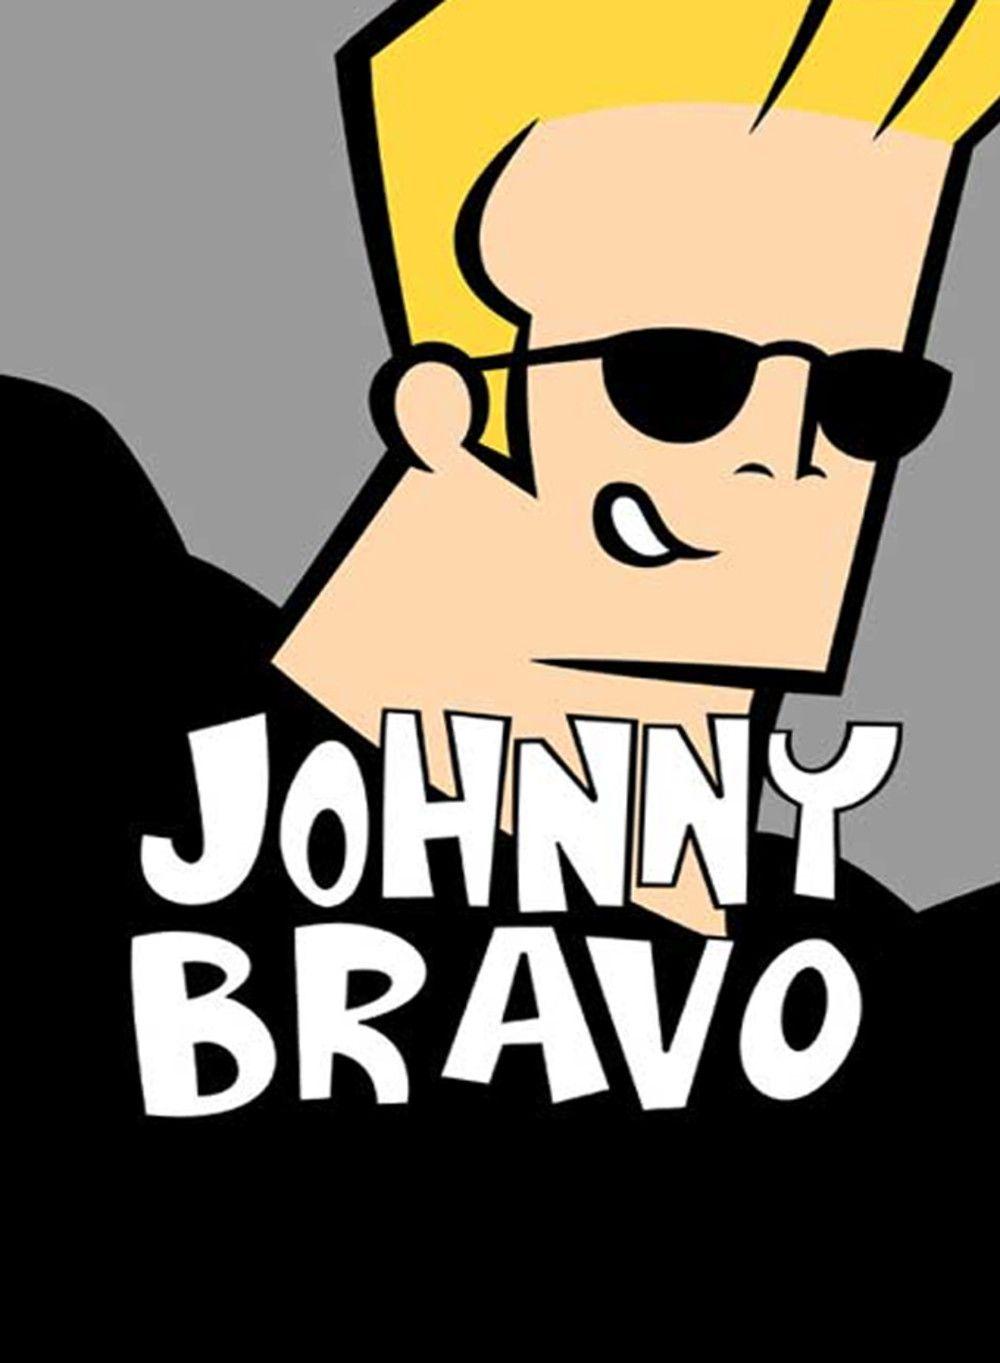 Johnny Bravo (TV Series 1997–2004)